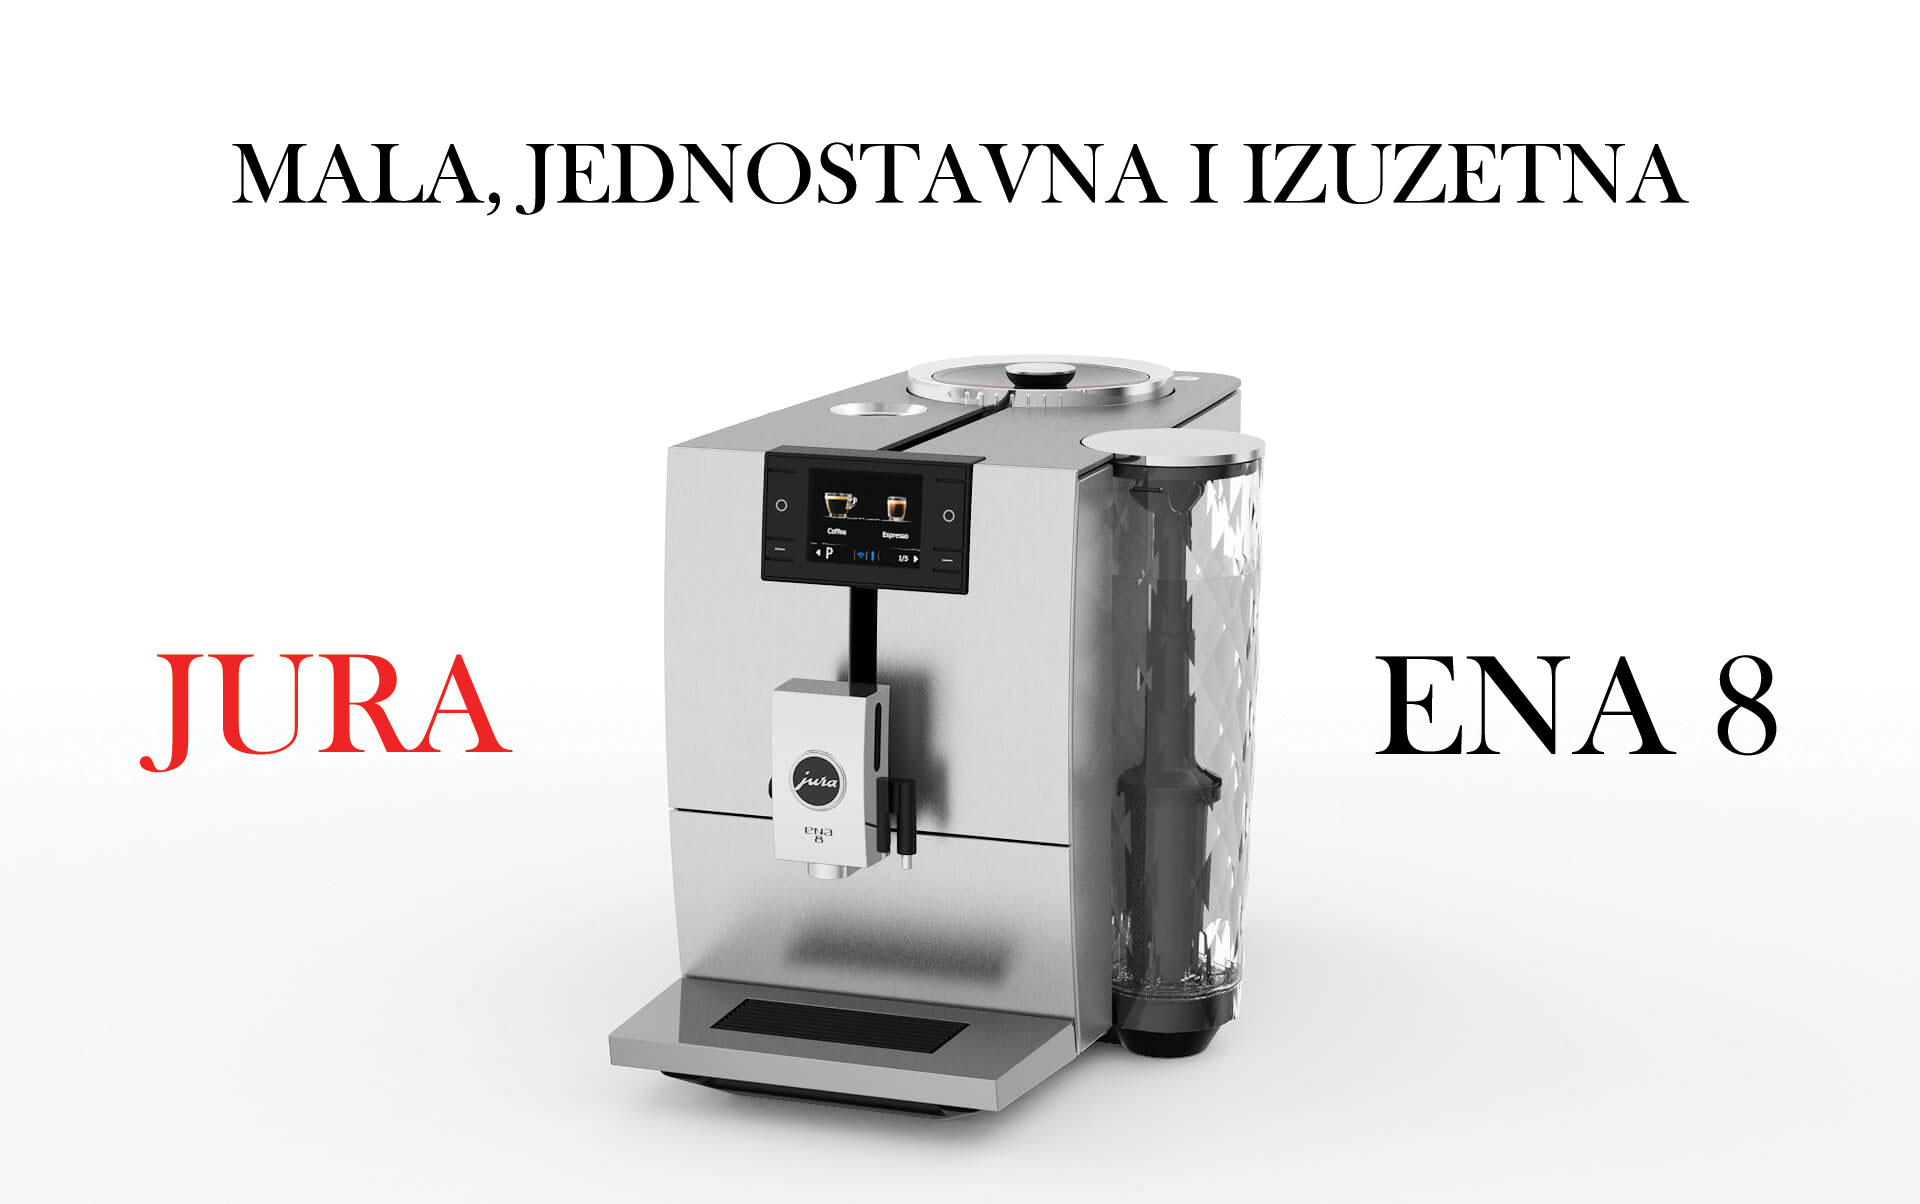 jura-srbija-prodaja-jura-espresso-aparata-jura-ena-8